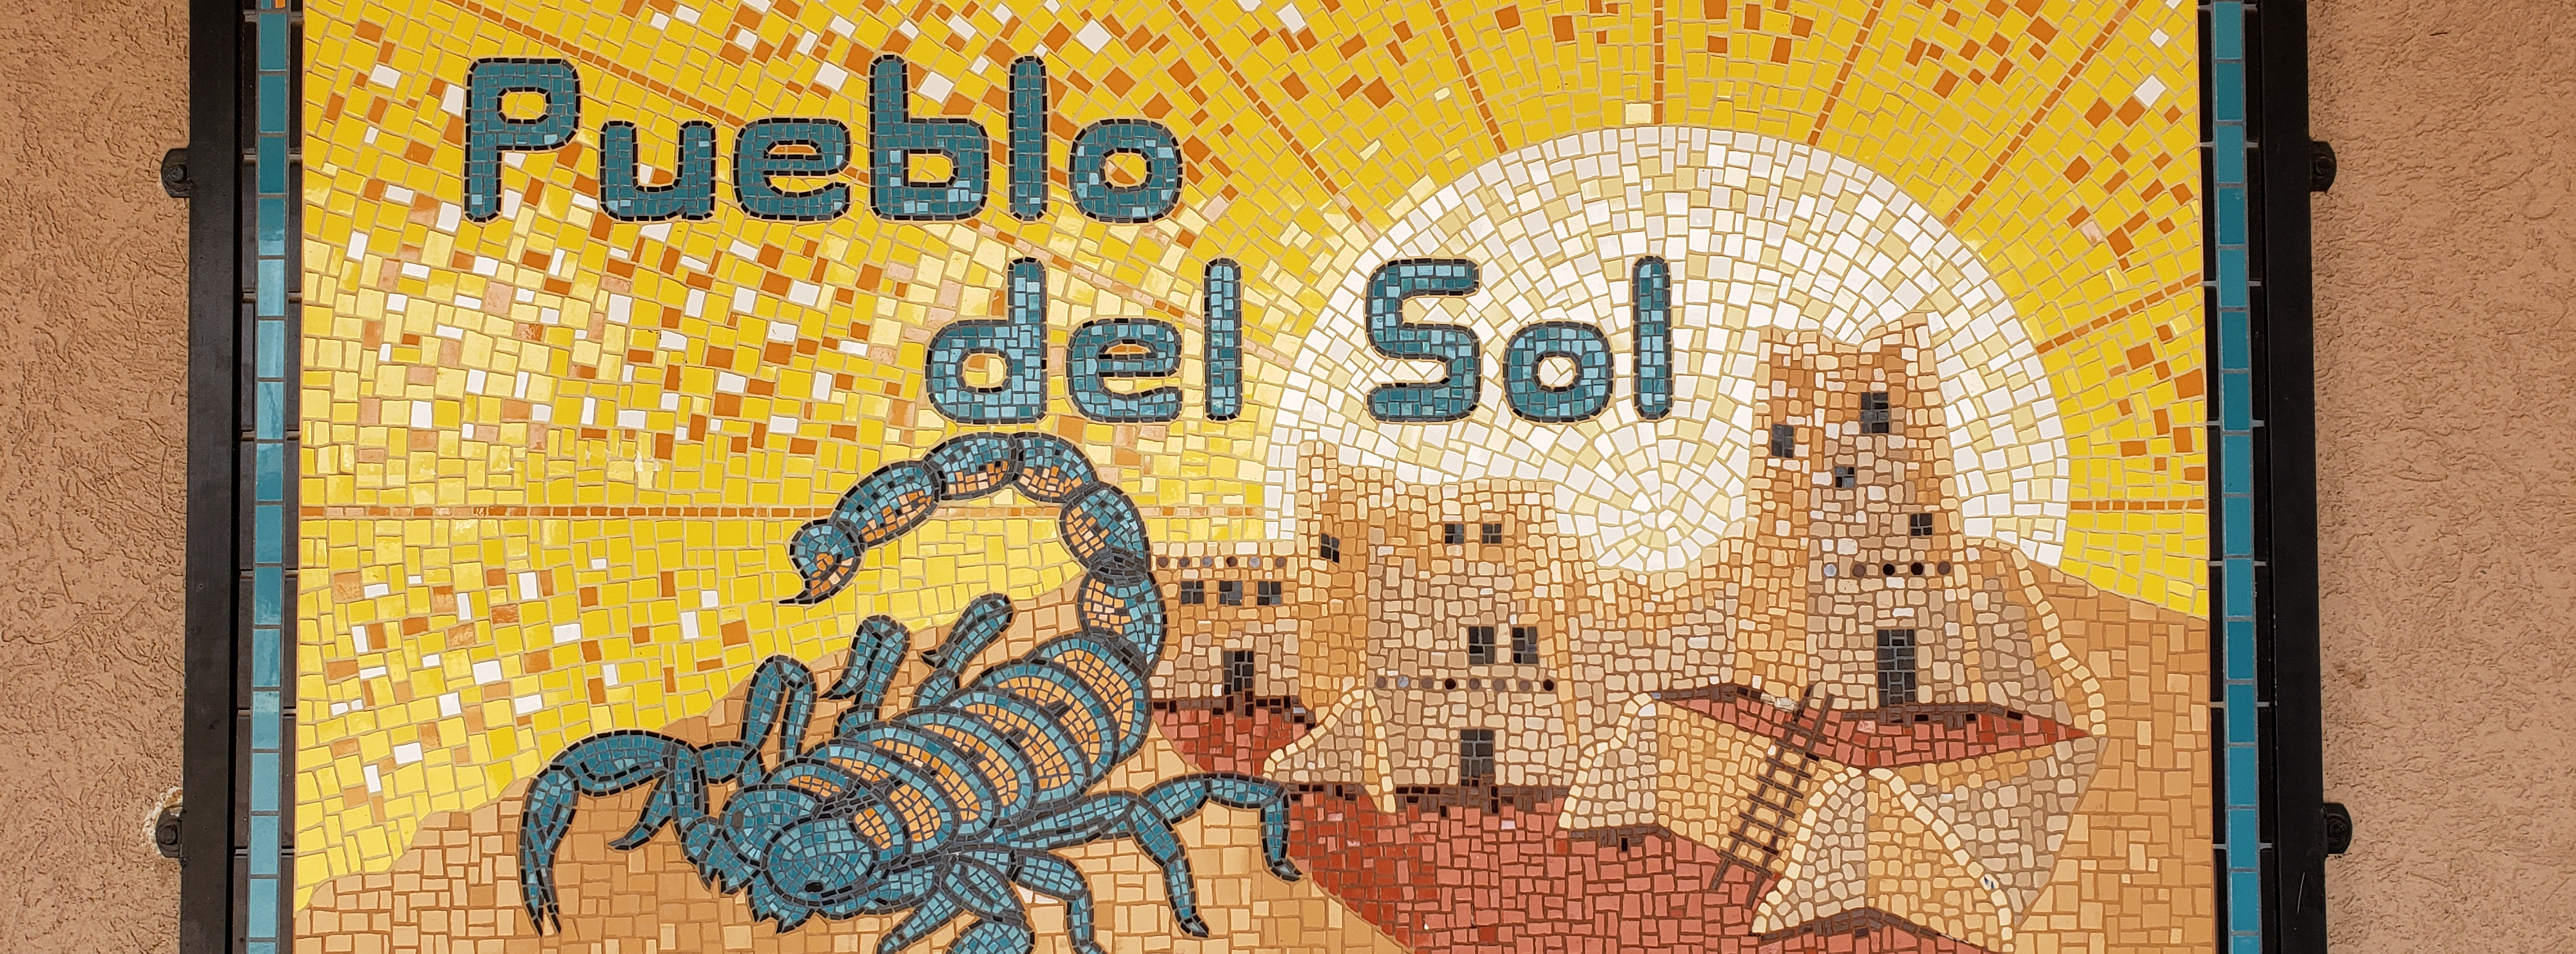 Pueblo del Sol mosaic sign